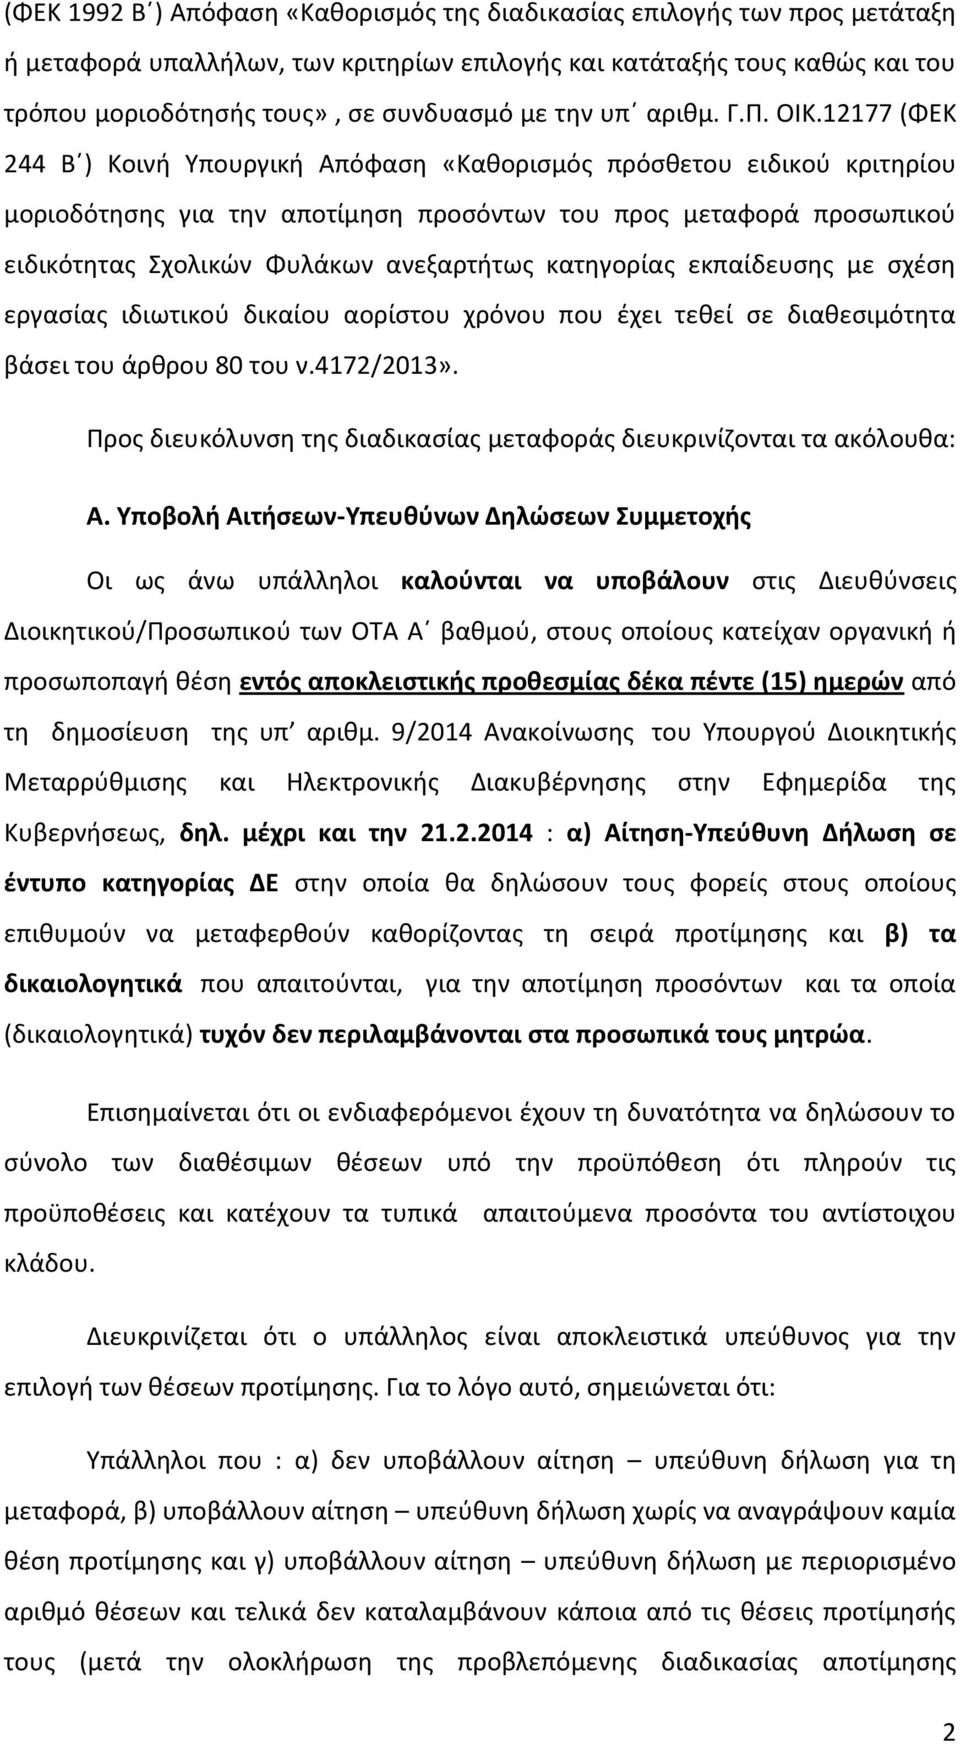 12177 (ΦΕΚ 244 Β ) Κοινή Υπουργική Απόφαση «Καθορισμός πρόσθετου ειδικού κριτηρίου μοριοδότησης για την αποτίμηση προσόντων του προς μεταφορά προσωπικού ειδικότητας Σχολικών Φυλάκων ανεξαρτήτως